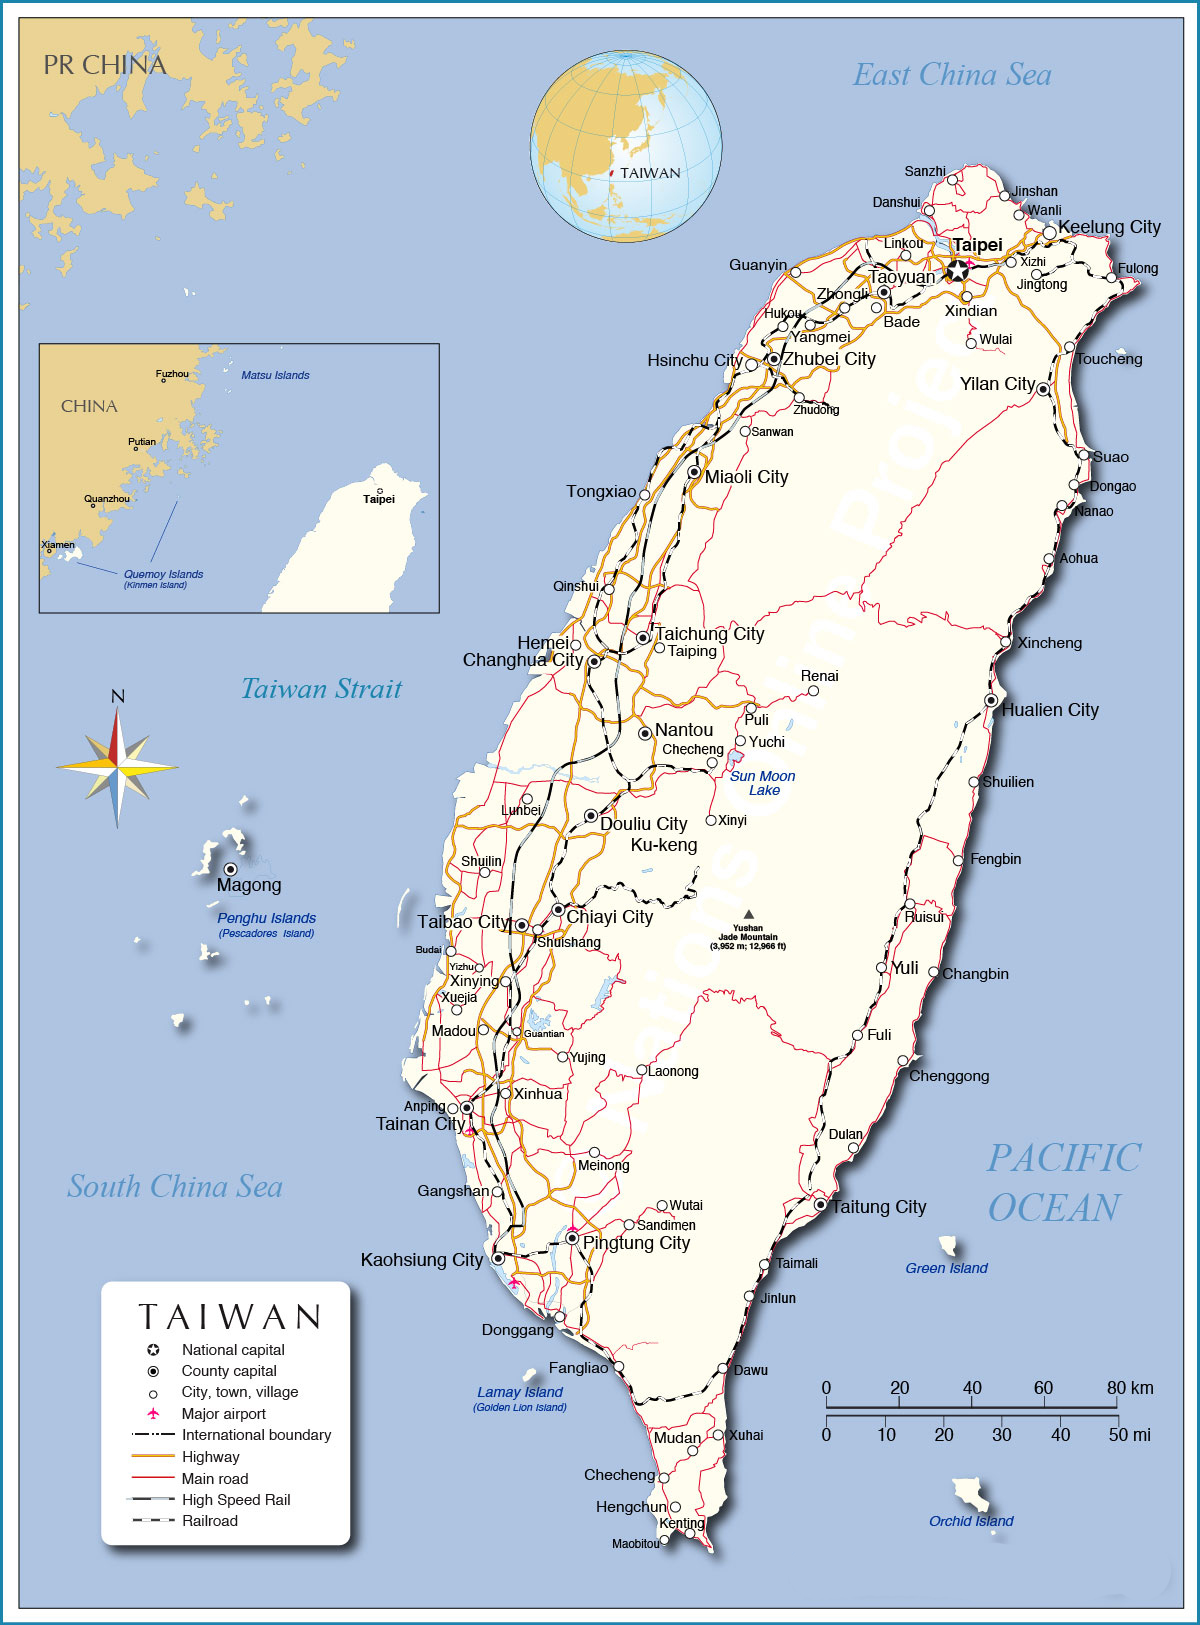 Bản đồ Đài Loan năm 2024: Năm 2024, Đài Loan sẽ có nhiều thay đổi và điểm đến mới cho du khách. Với những trang thiết bị hiện đại, sự phát triển về văn hóa và du lịch đang được đẩy mạnh, Đài Loan chắc chắn sẽ là một địa điểm tuyệt vời để khám phá trong tương lai.